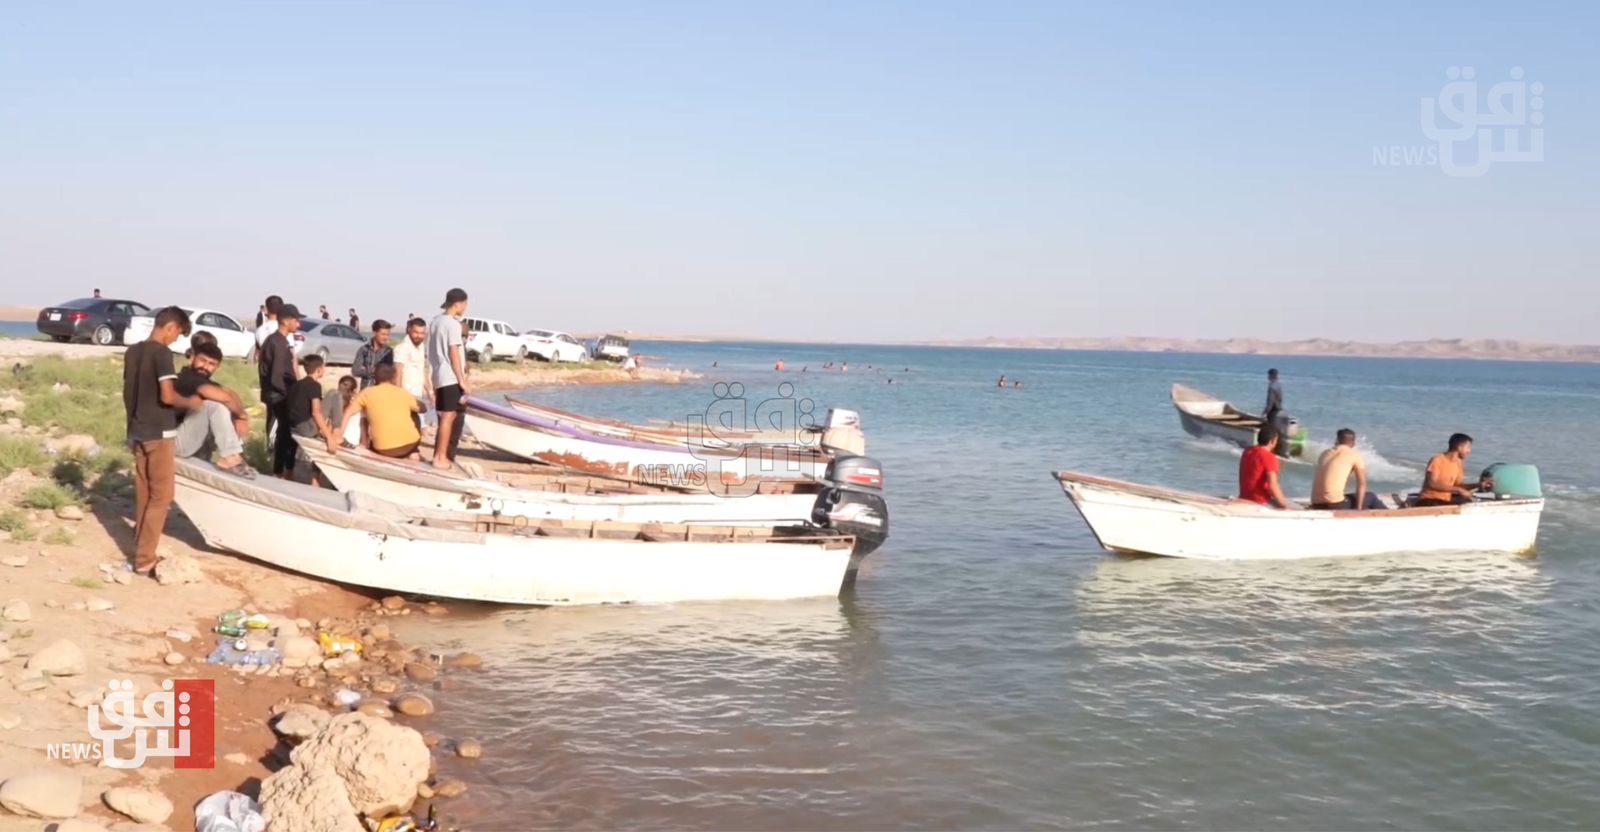 حكومة دهوك تمنع الصيد لثلاثة أشهر وتعتقل عدداً من المخالفين